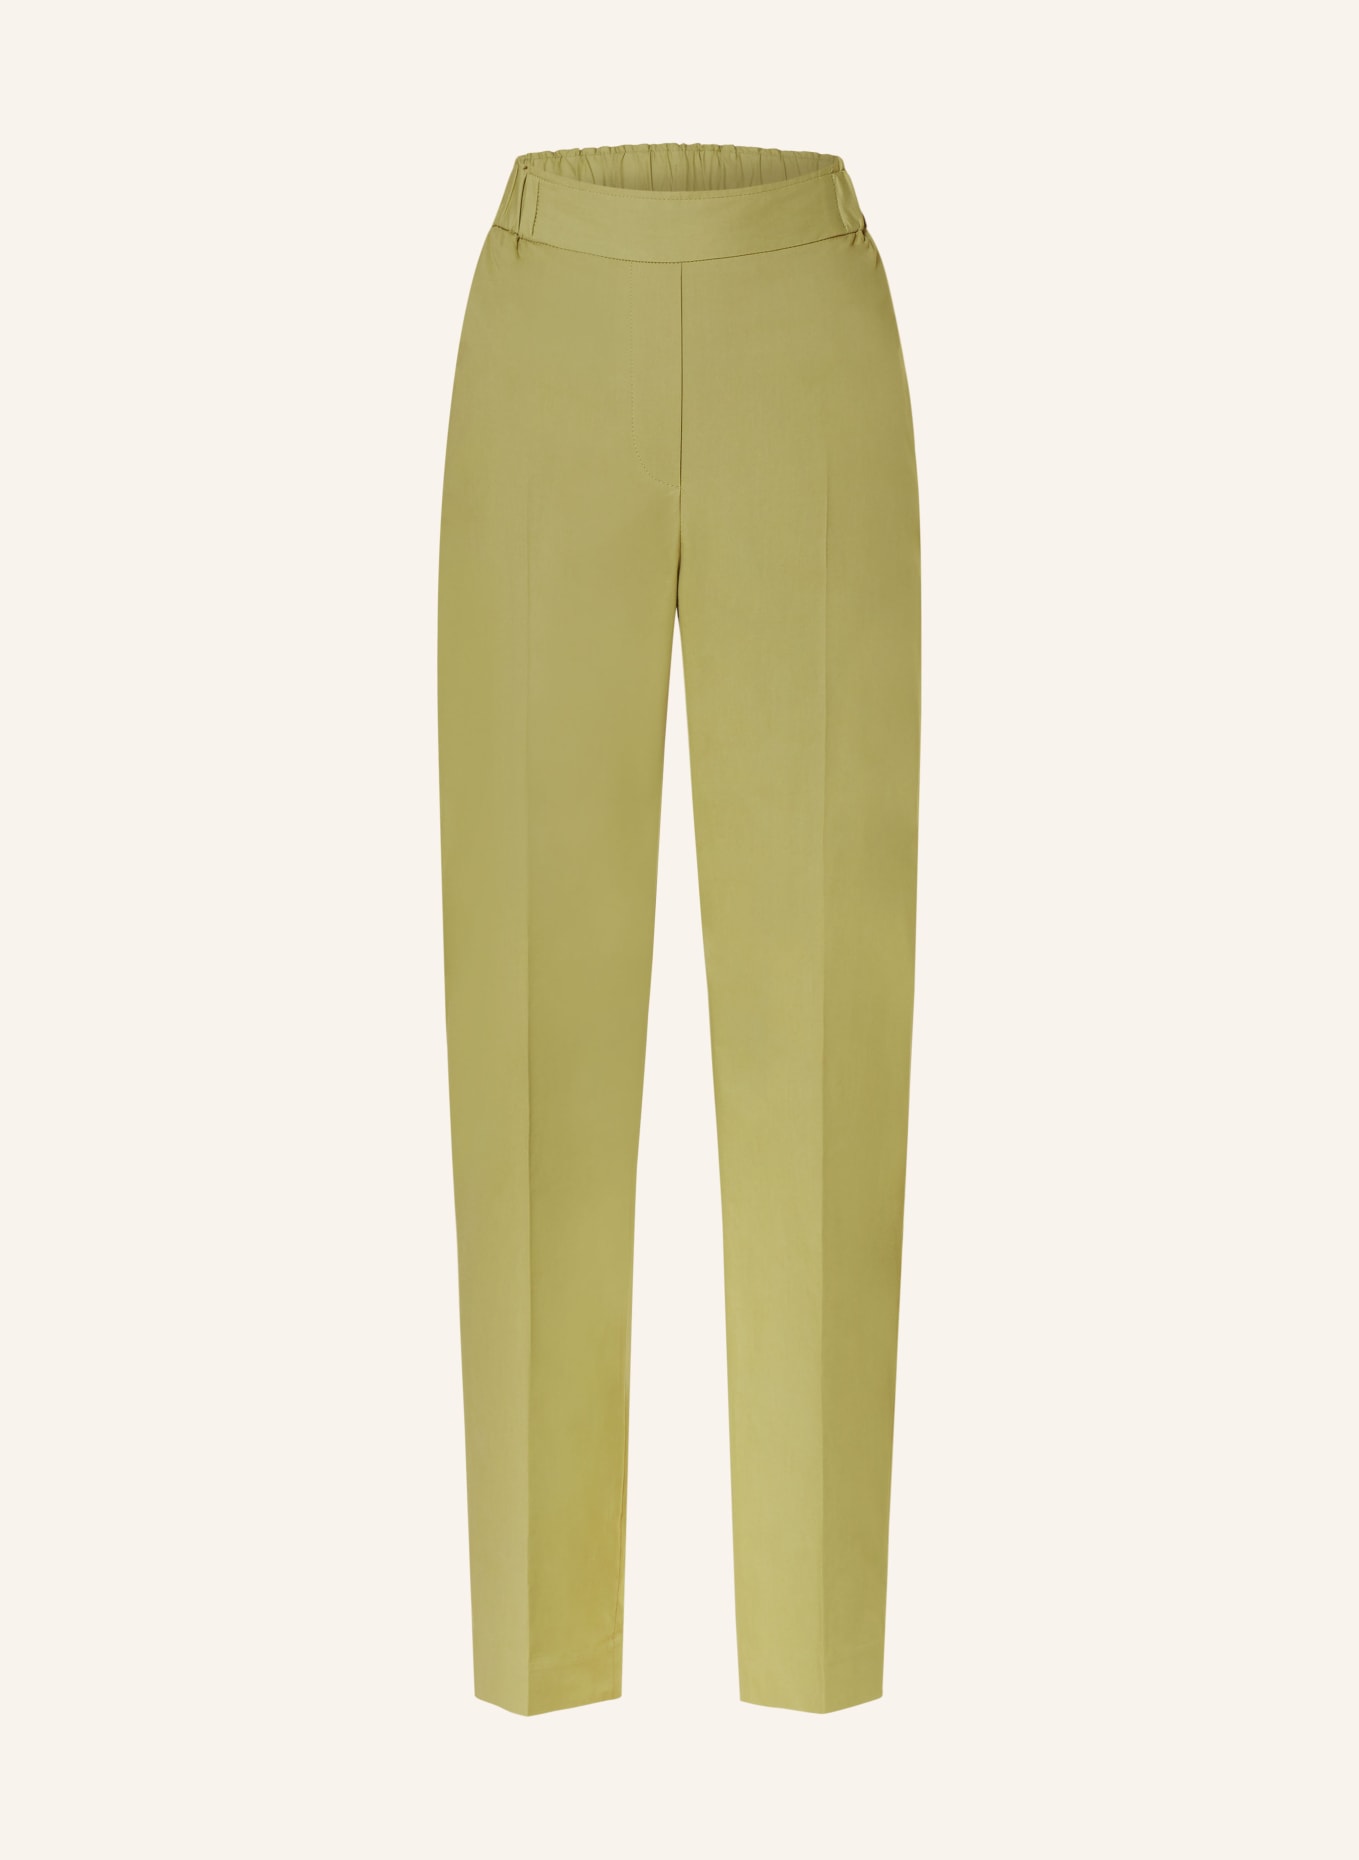 ANTONELLI firenze Trousers PREZZEMOLO, Color: OLIVE (Image 1)